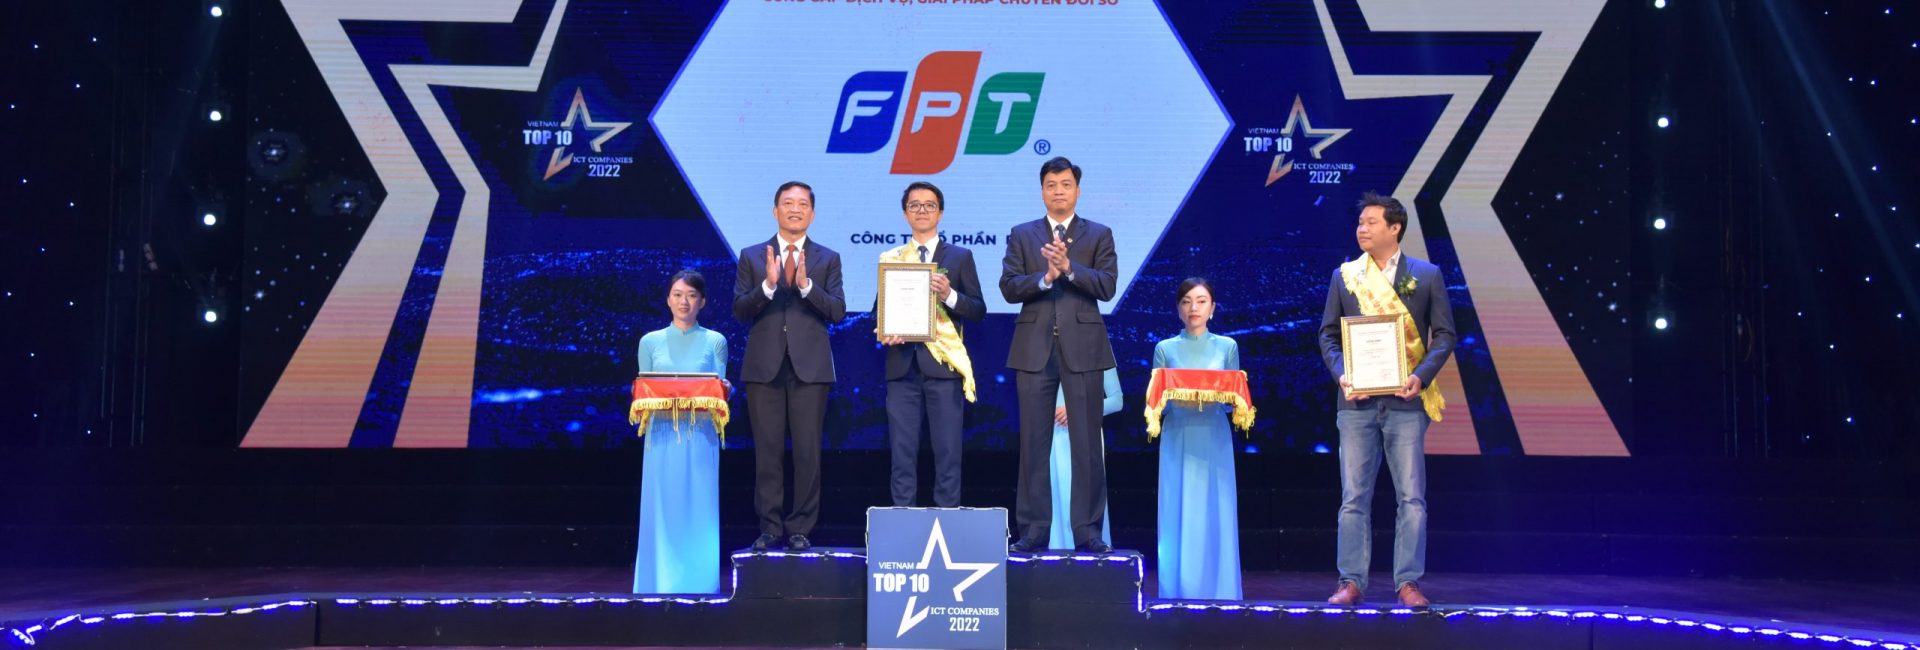 FPT Digital nhận giải vinh danh top 10 doanh nghiệp CNTT Việt Nam 2022